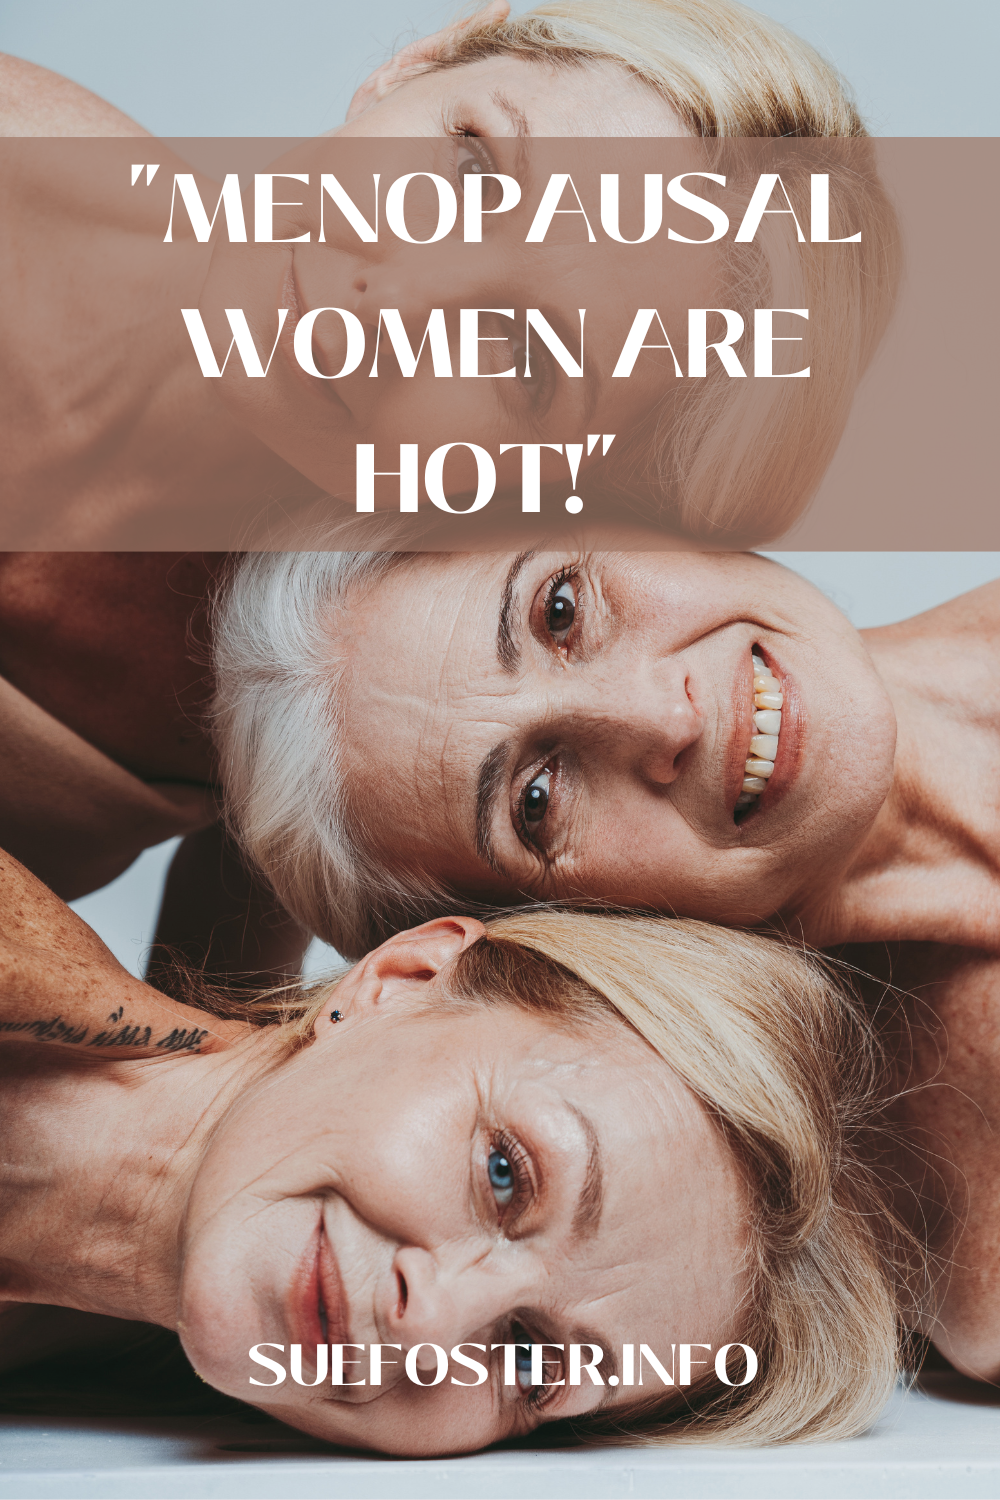 "Menopausal women are hot!"